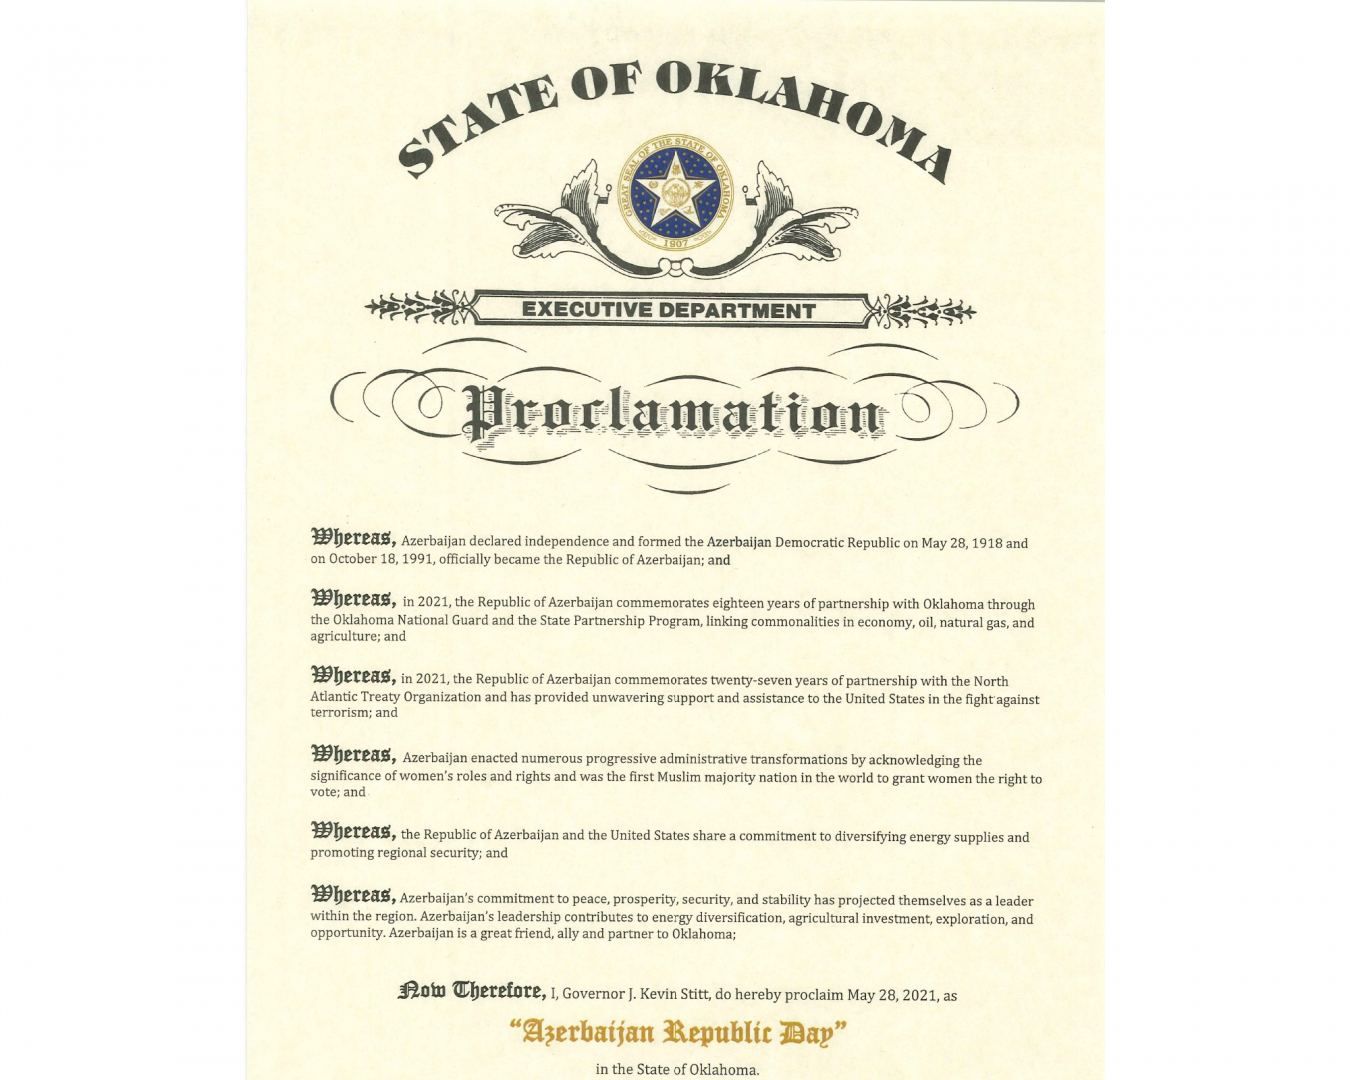 Le gouverneur de l'Oklahoma signe une déclaration à l'occasion du 103e anniversaire de la création de la République Démocratique d'Azerbaïdjan